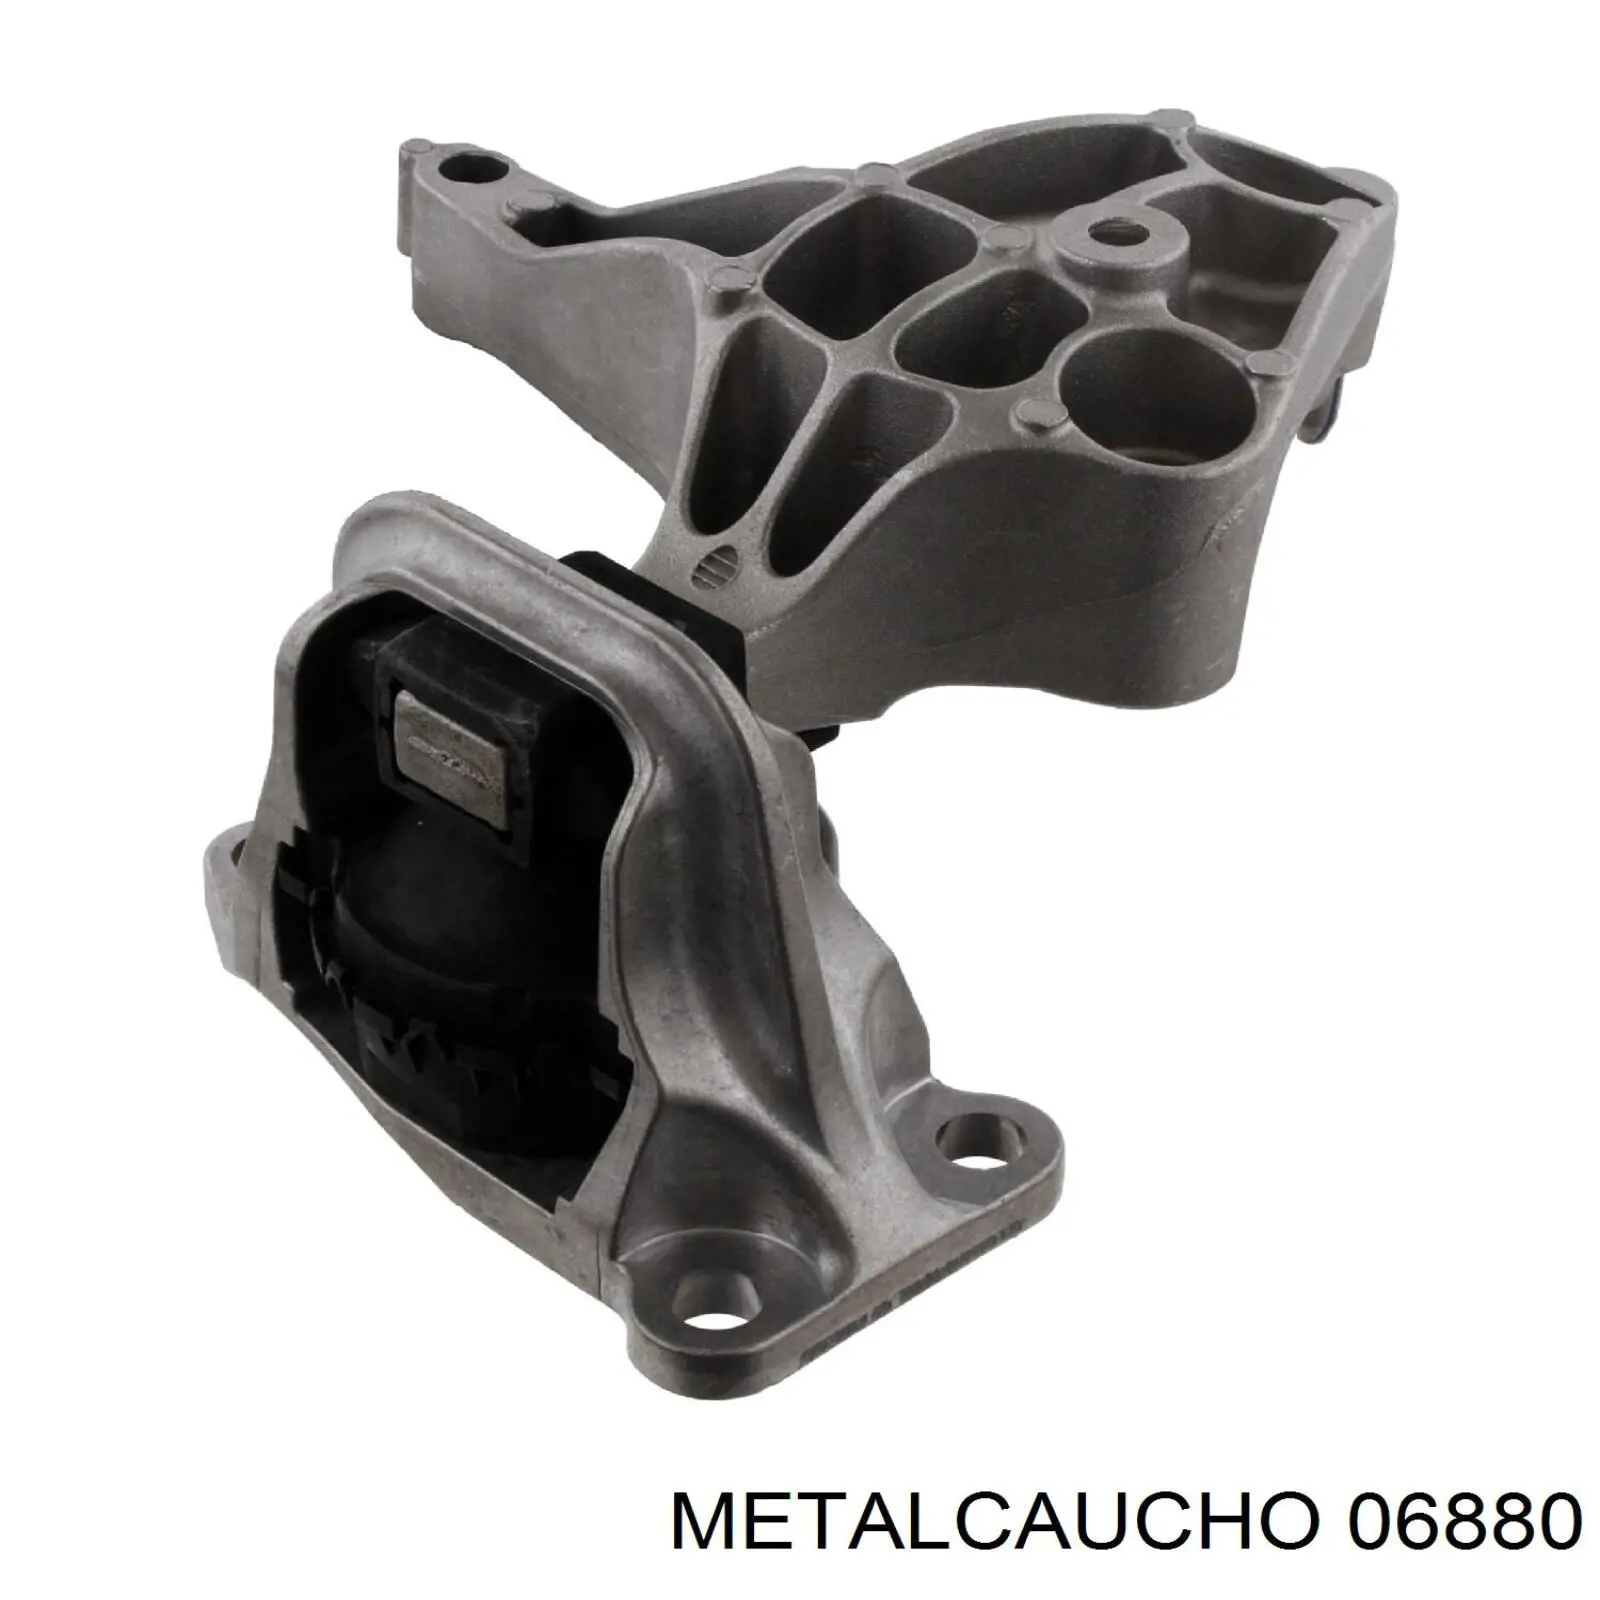 06880 Metalcaucho coxim (suporte direito de motor)